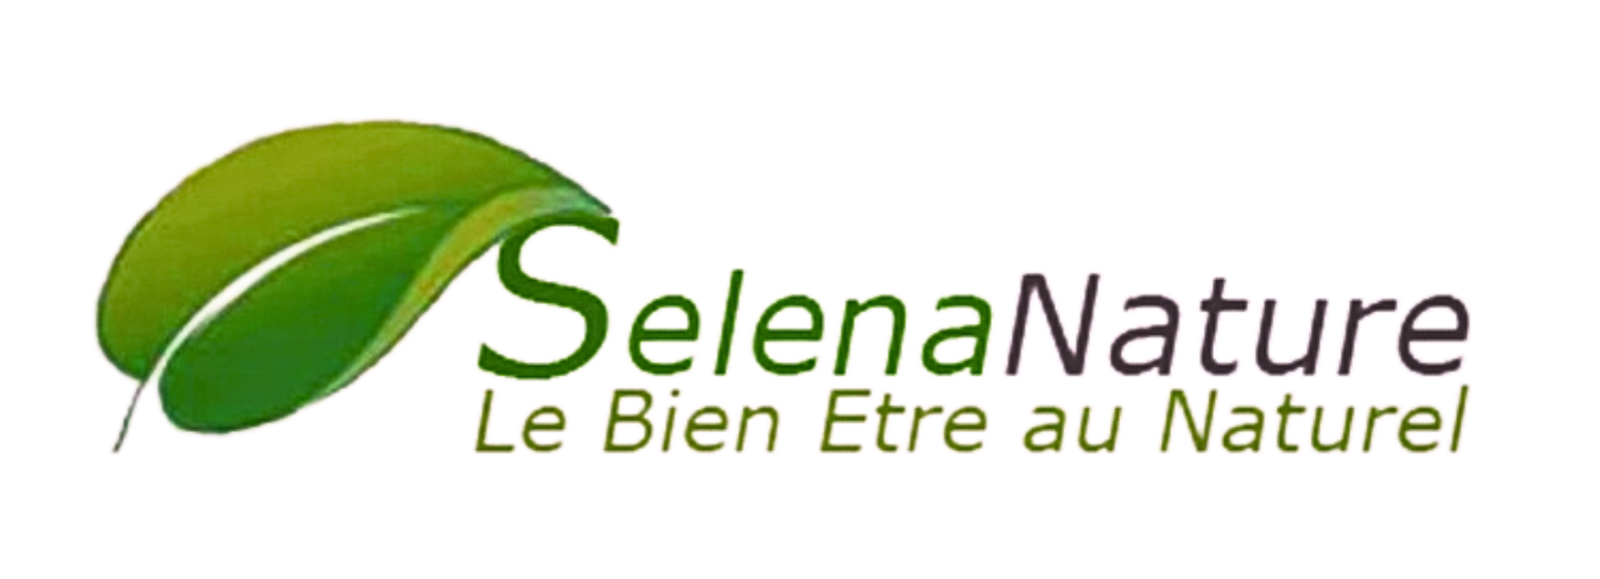 Selena-Nature